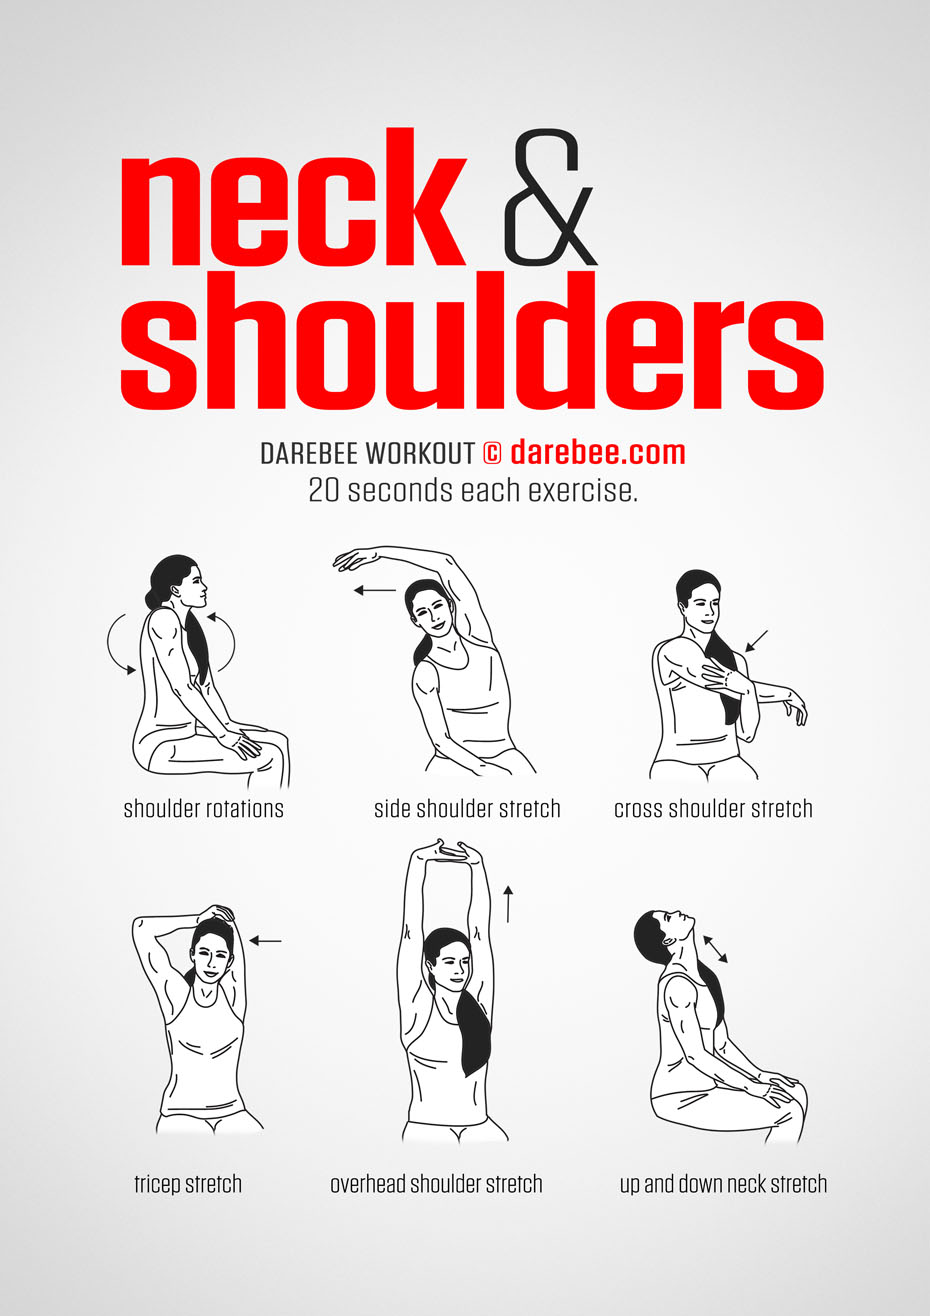 Neck & Shoulders Workout